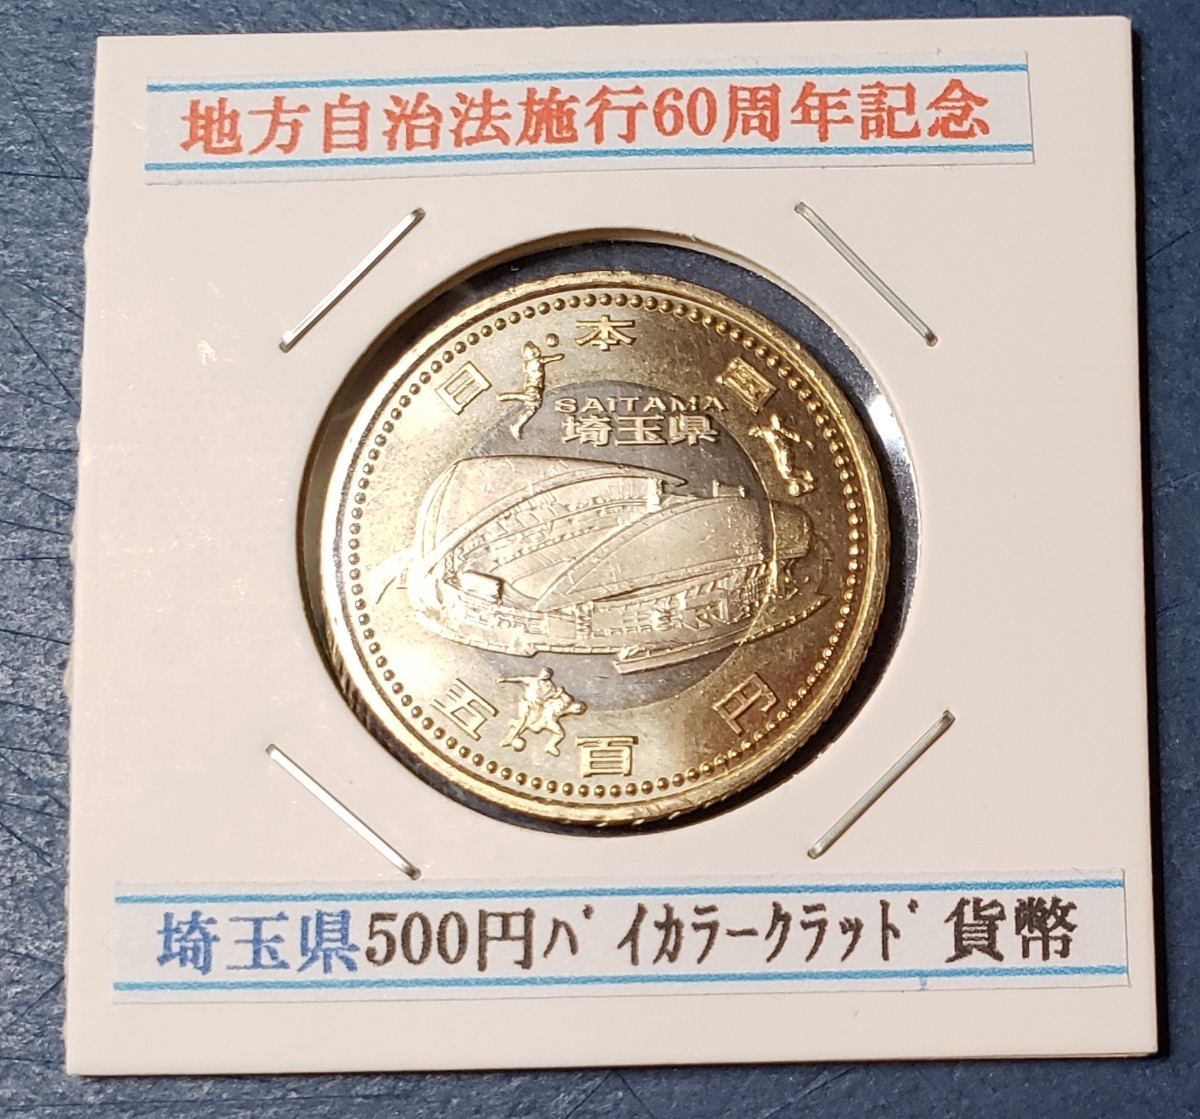 地方自治法施行60周年記念500円バイカラー・クラッド貨幣 | nate